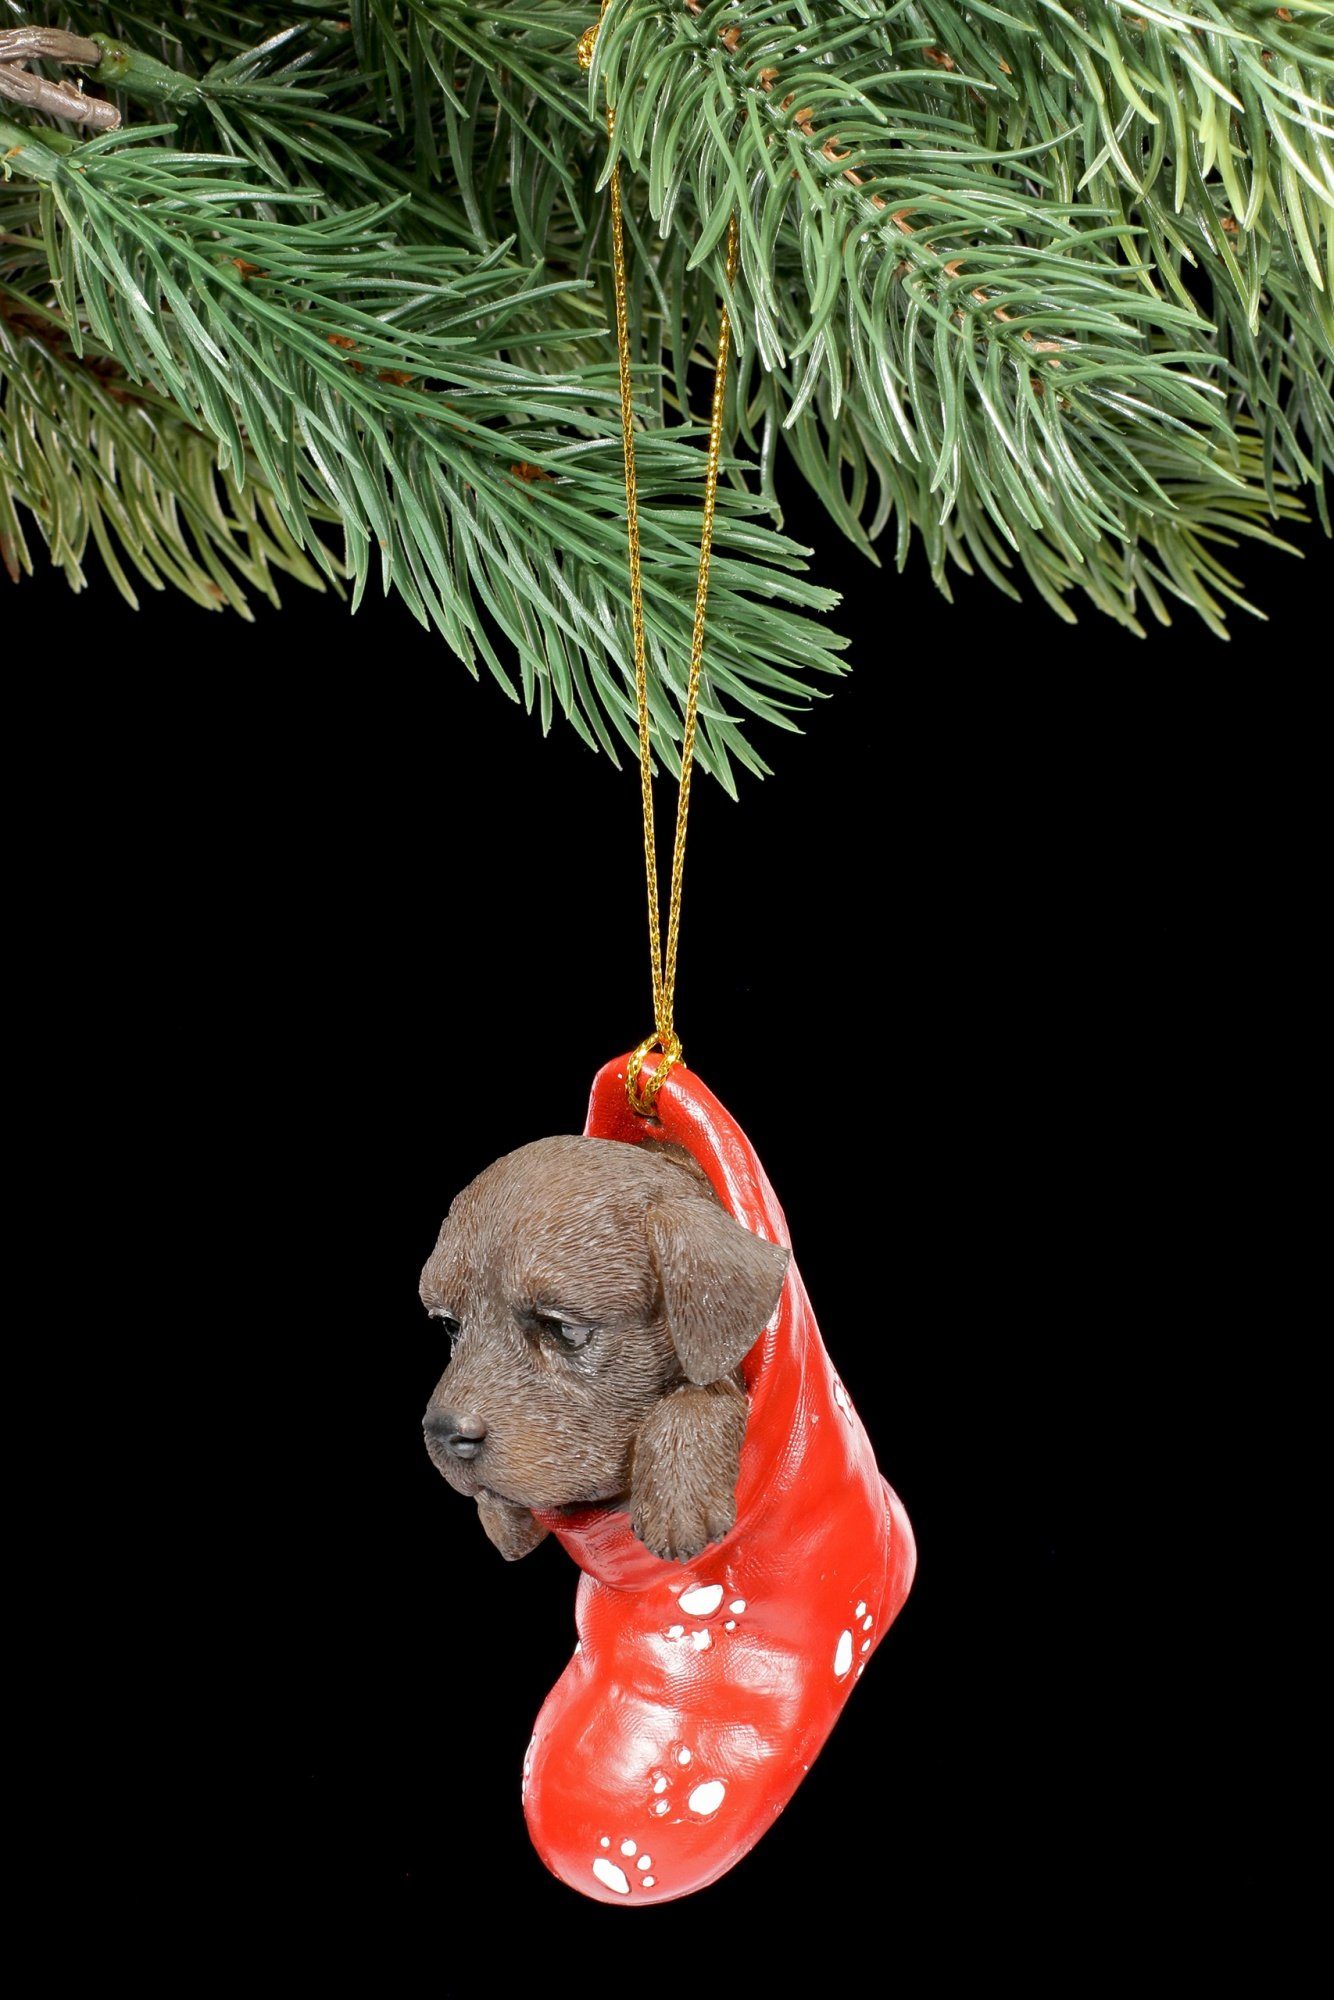 Figuren Shop GmbH Christbaumschmuck Christbaumschmuck Hund - Chocolate Labrador im Strumpf - Tier Deko Weihnachten (1-tlg)